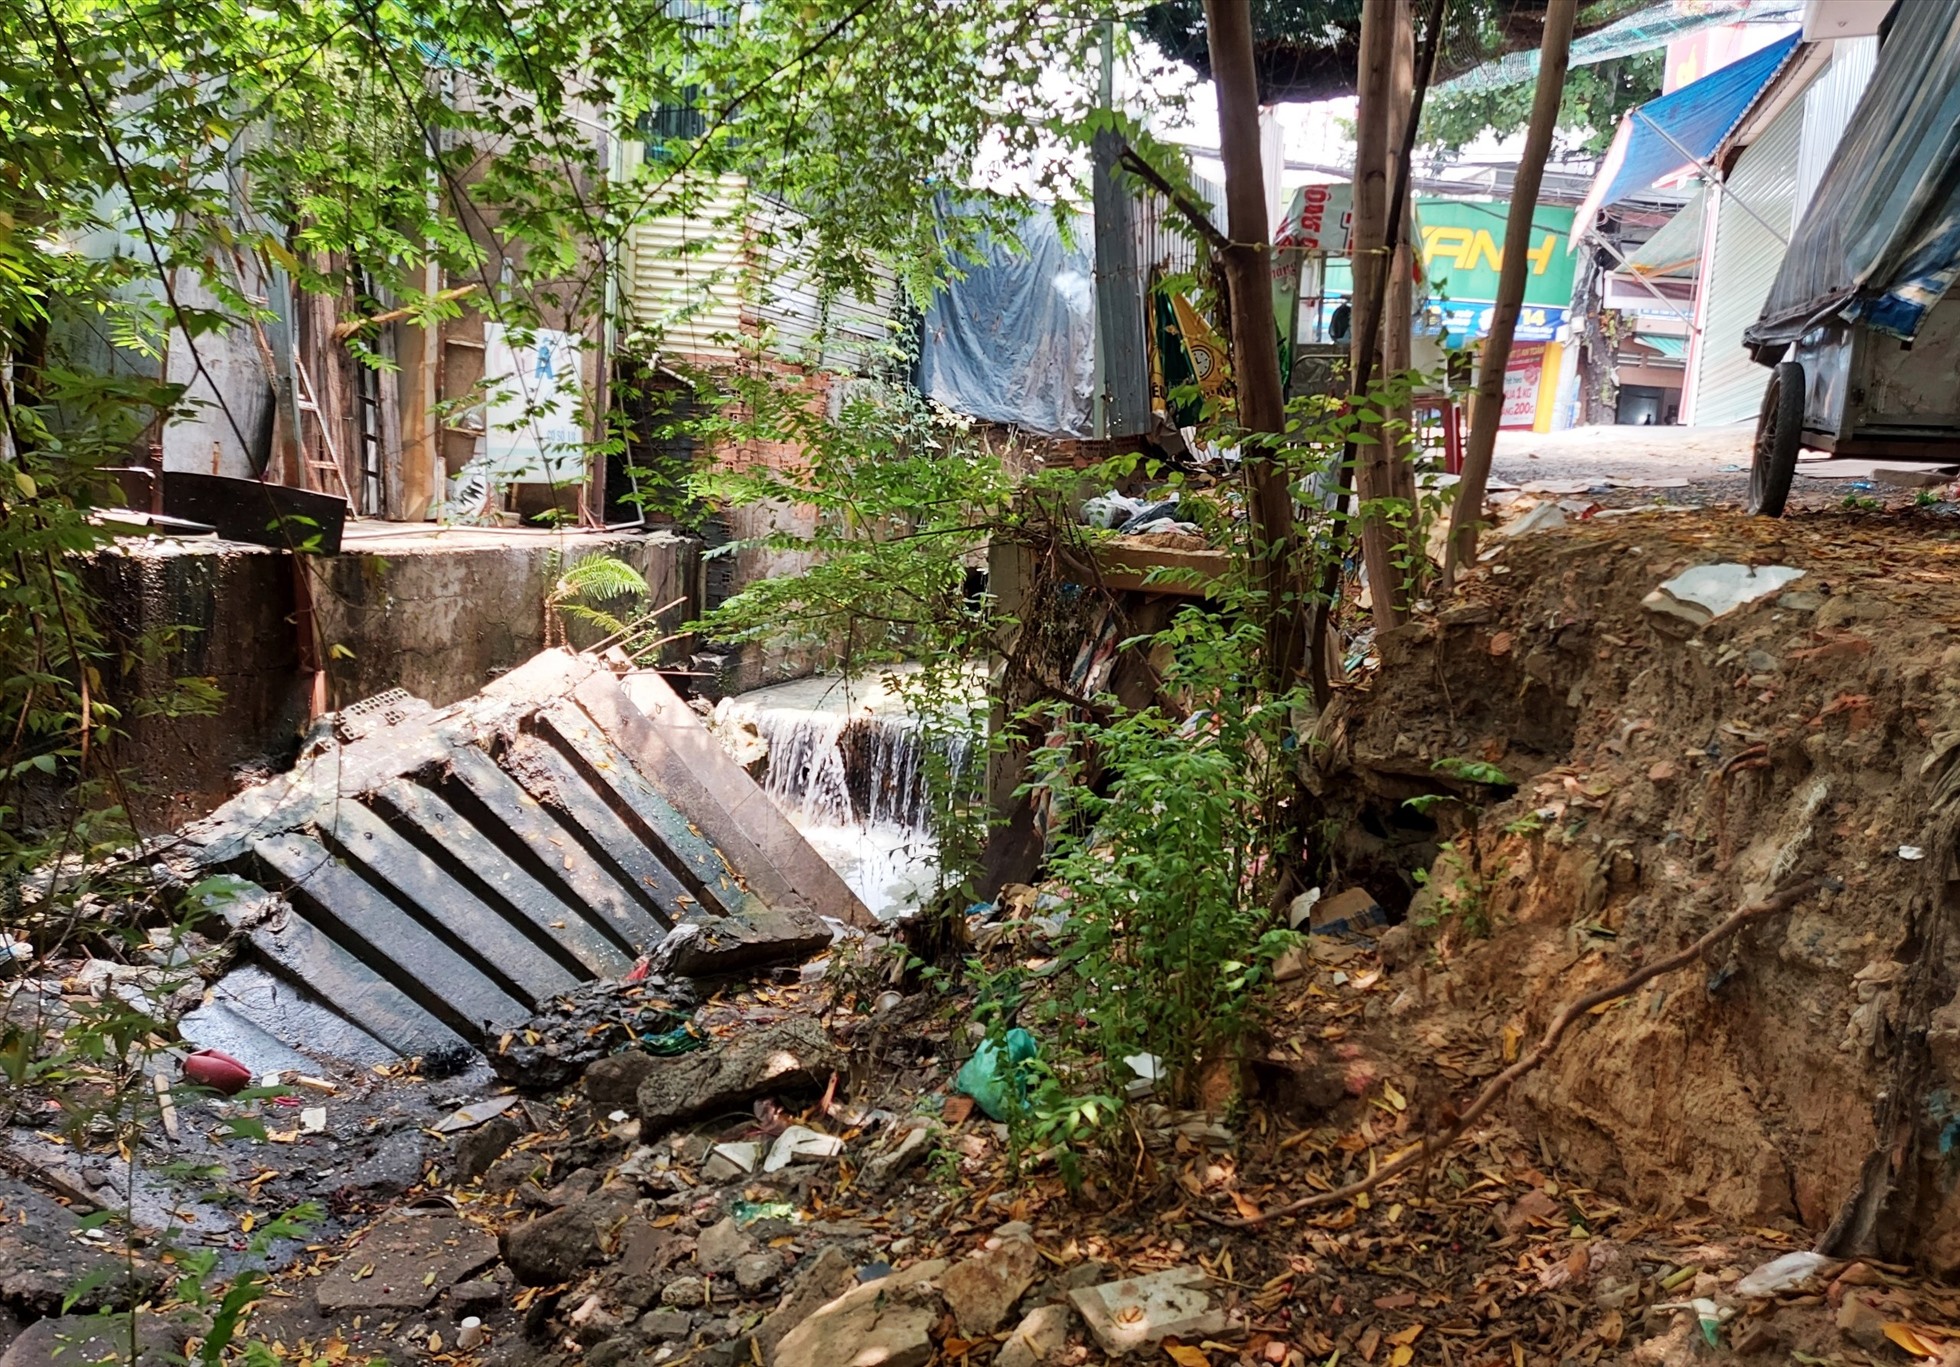 Sau trận mưa lớn vào năm 2021, nước chảy xiết làm một nhà dân bị sạt lở, phần cừ bê tông bị sạt ra suối gây sụp lún nặng nề.